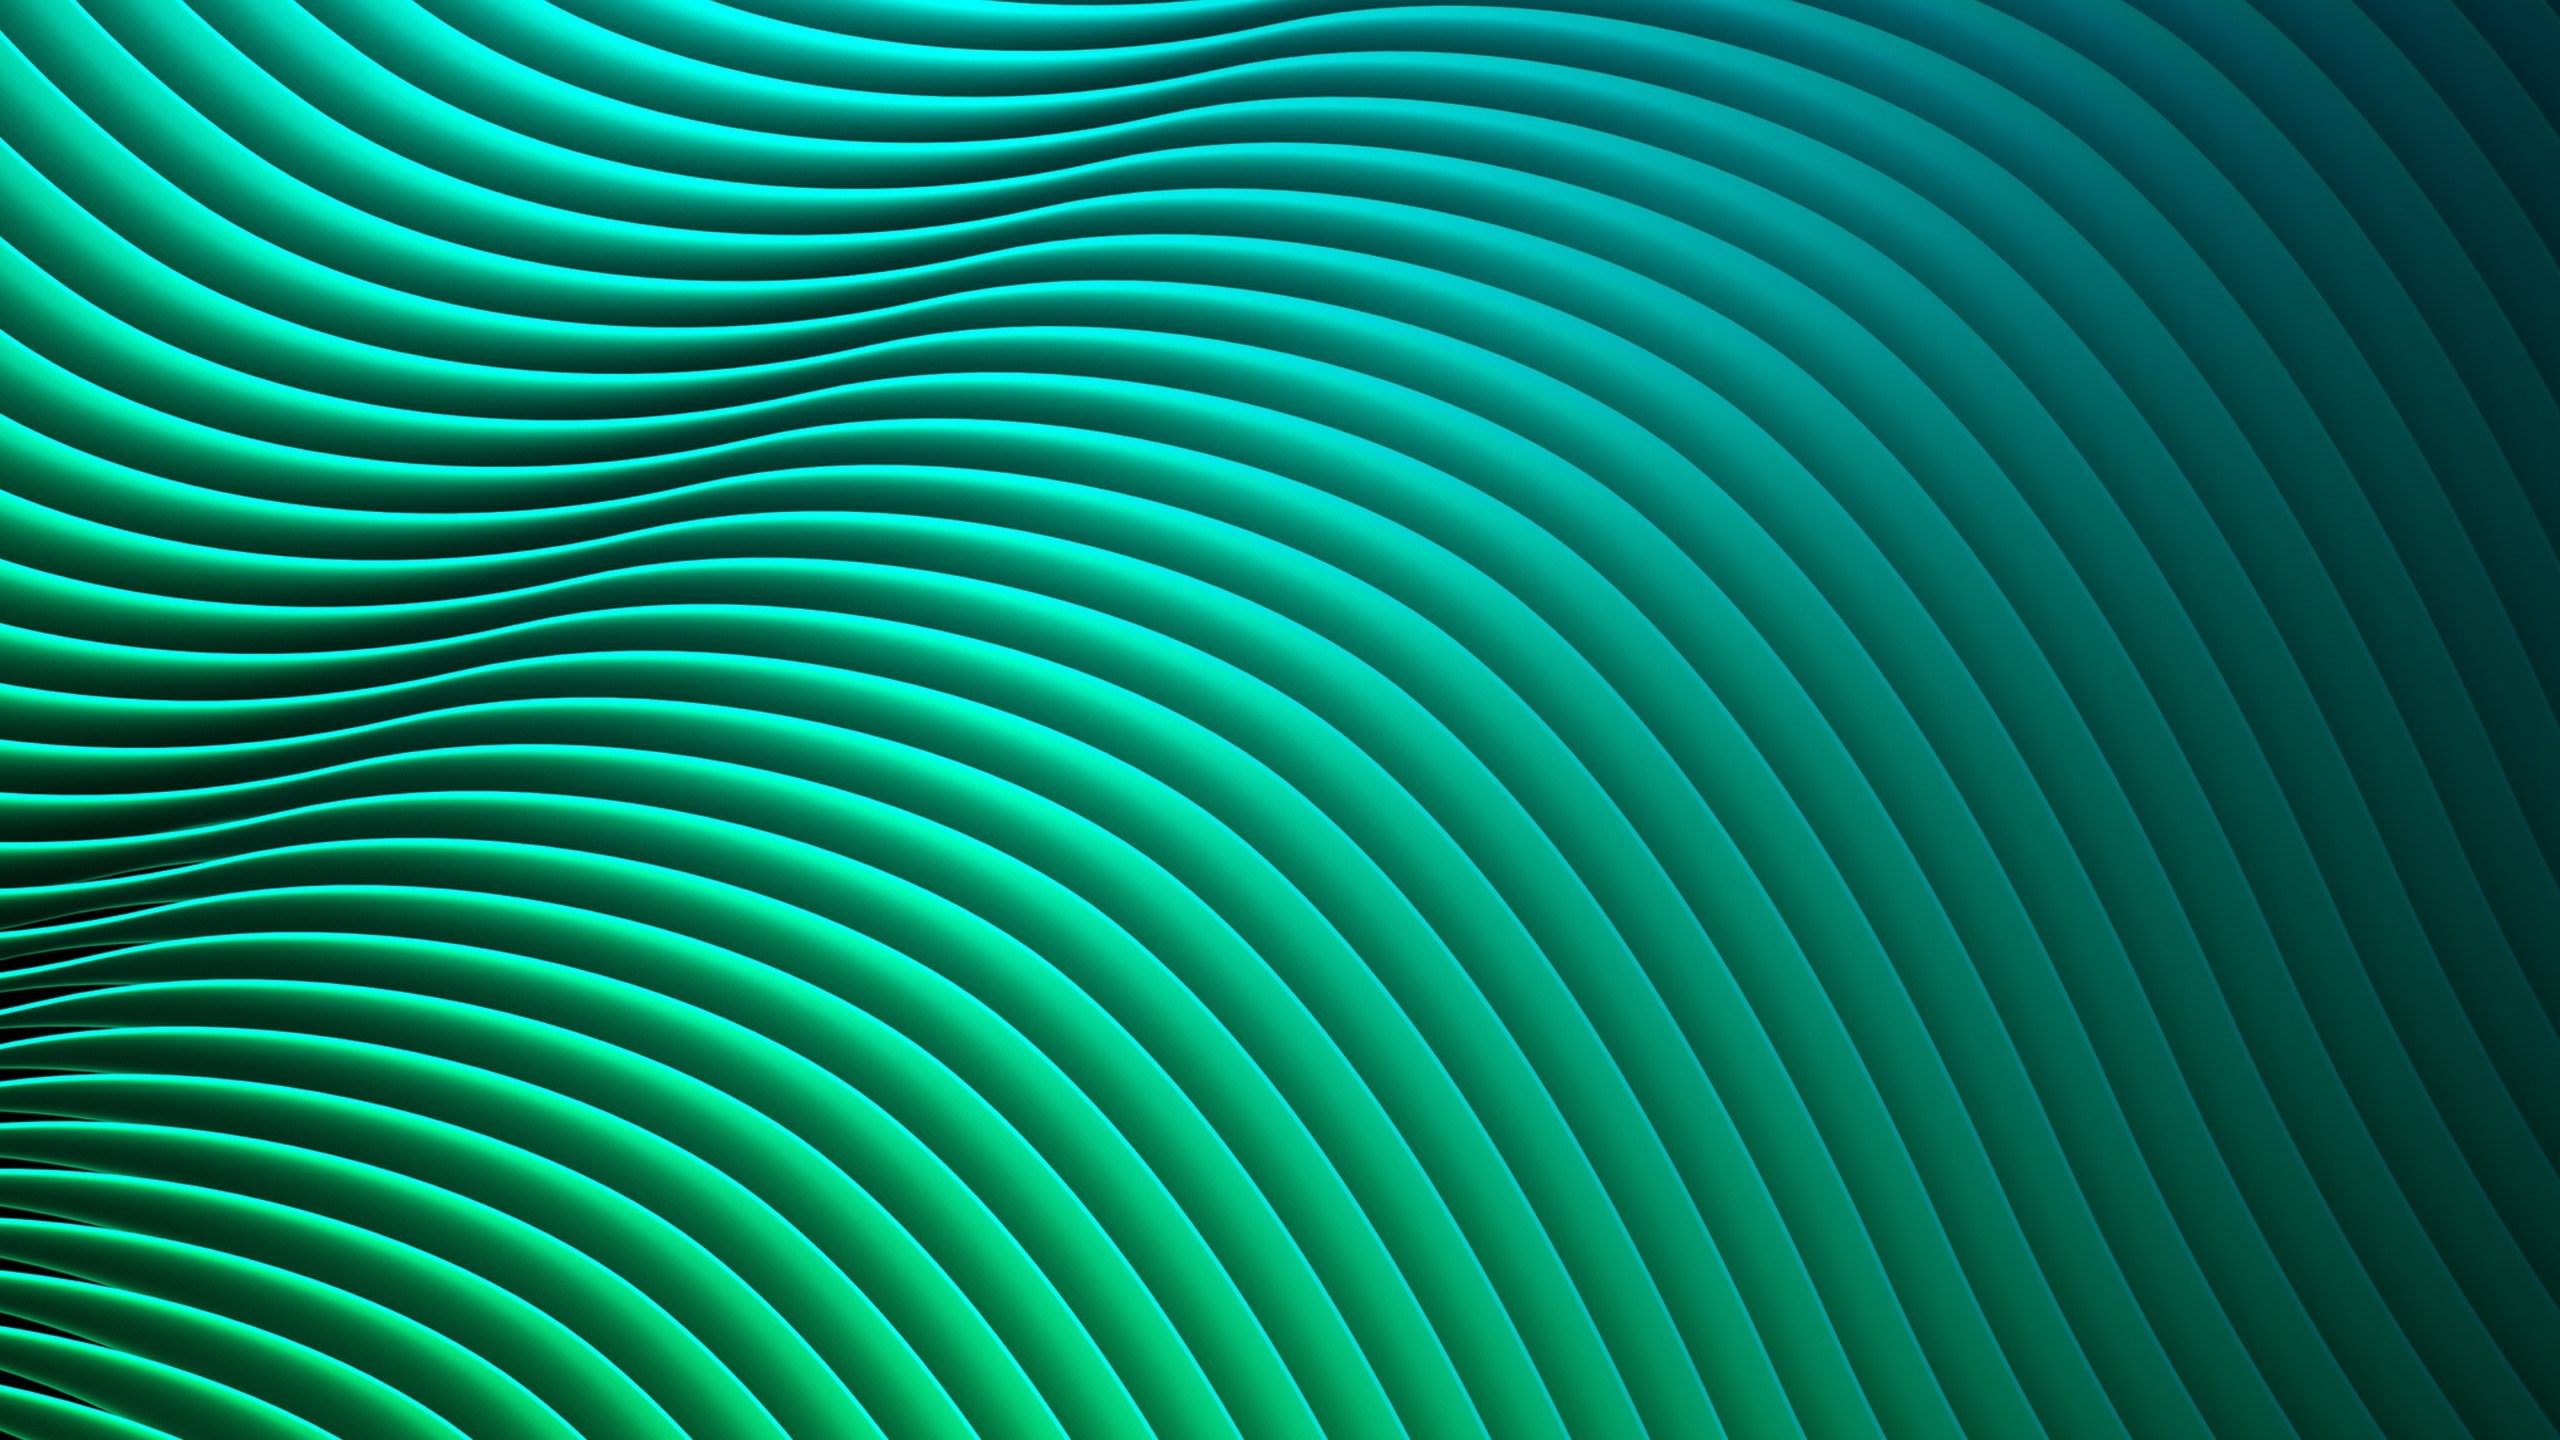 Fondos de pantalla Abstract waves pattern